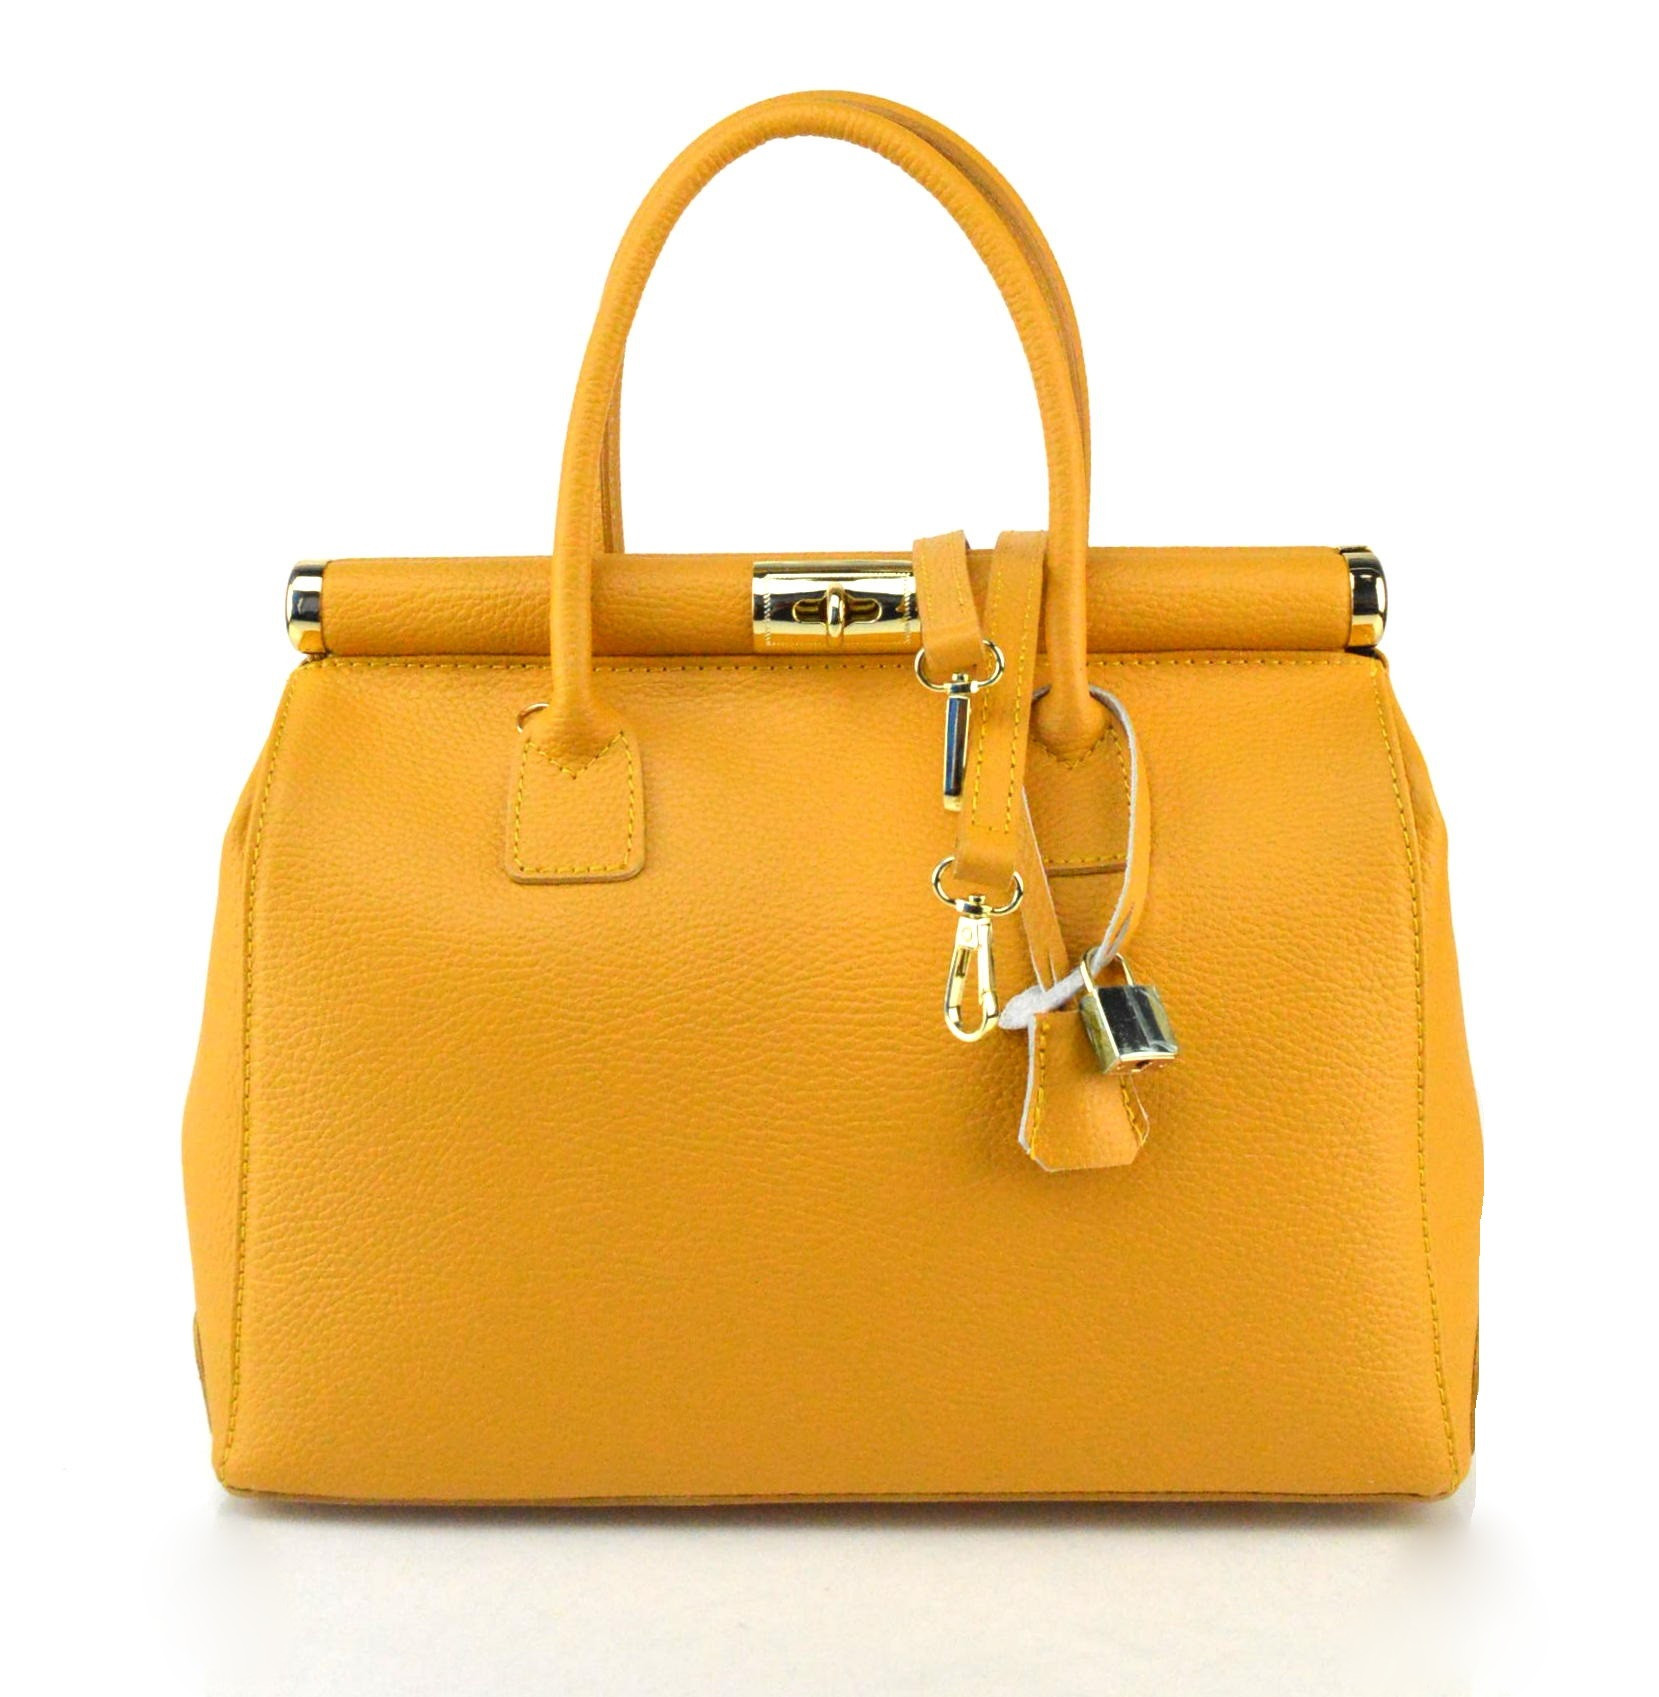 Stylová luxusní hořčicově žlutá kožená kabelka do ruky Aliste